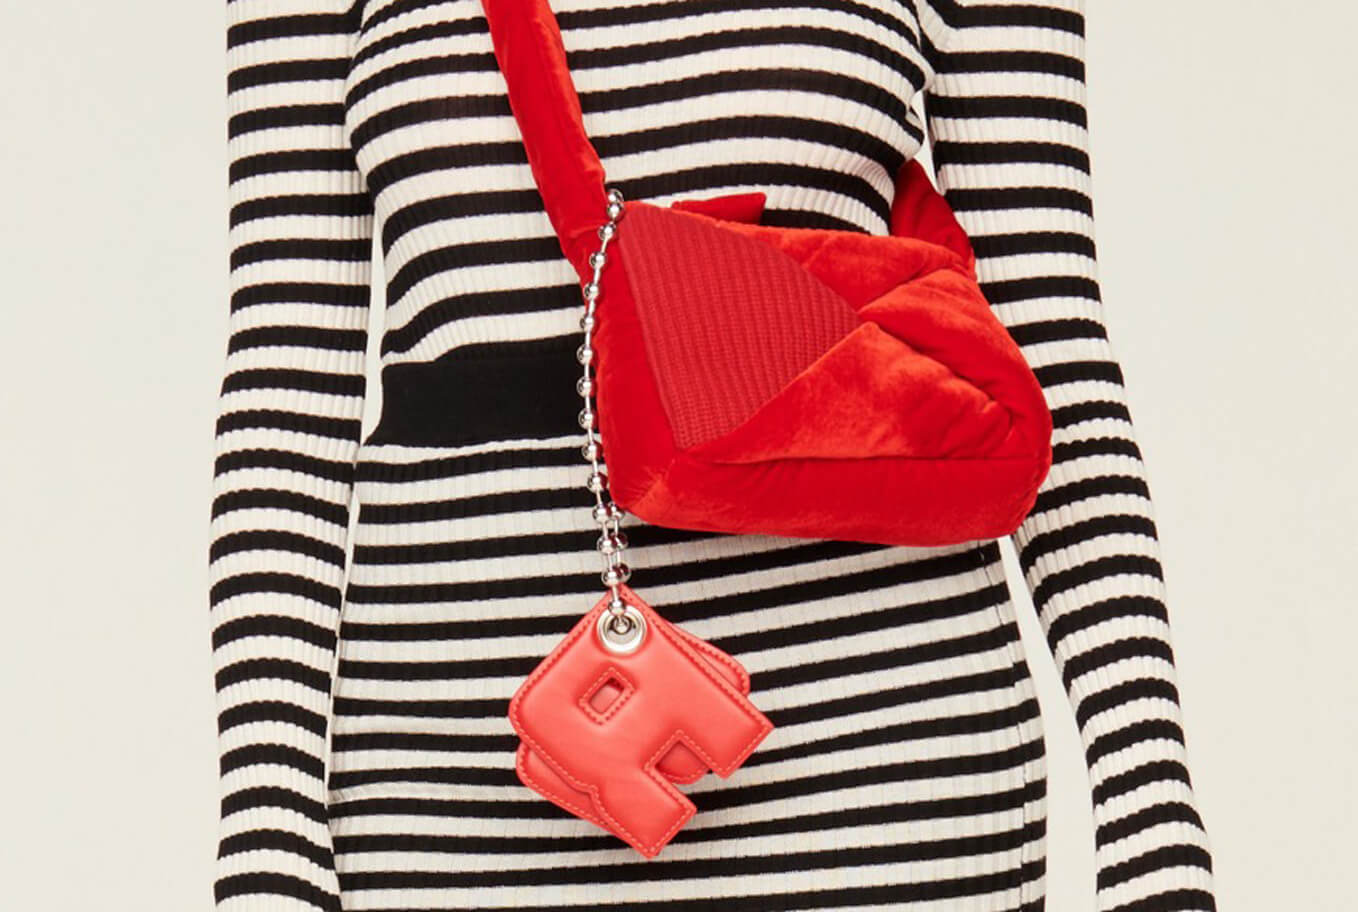 Demi-Pull luxury handbag for women